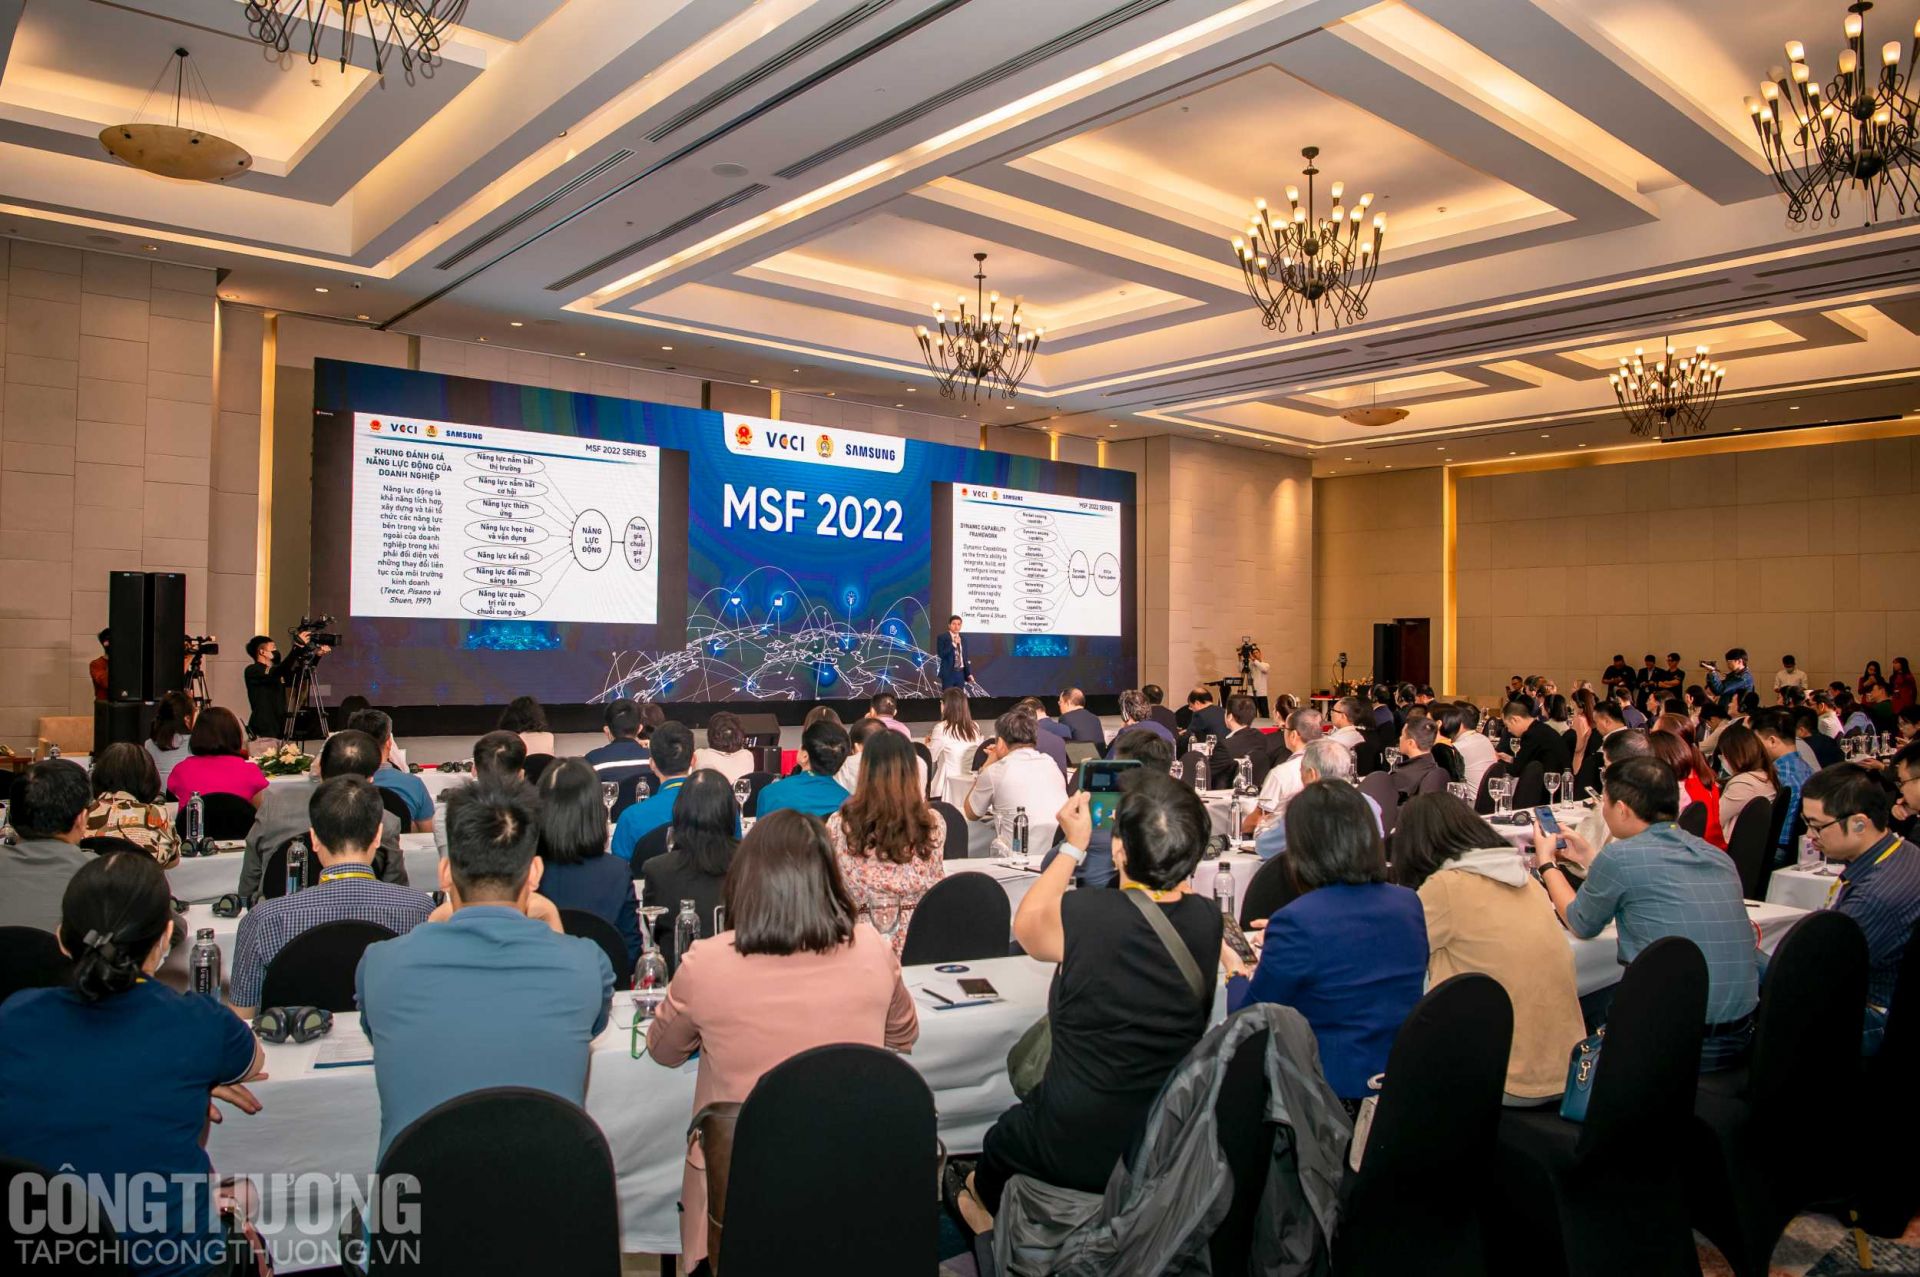 Diễn đàn đa phương (MSF) 2022 với chủ đề "Cải thiện vị thế trong chuỗi giá trị toàn cầu cho Việt Nam: Hợp tác đa phương trong nâng cao năng lực và Trách nhiệm tra soát”